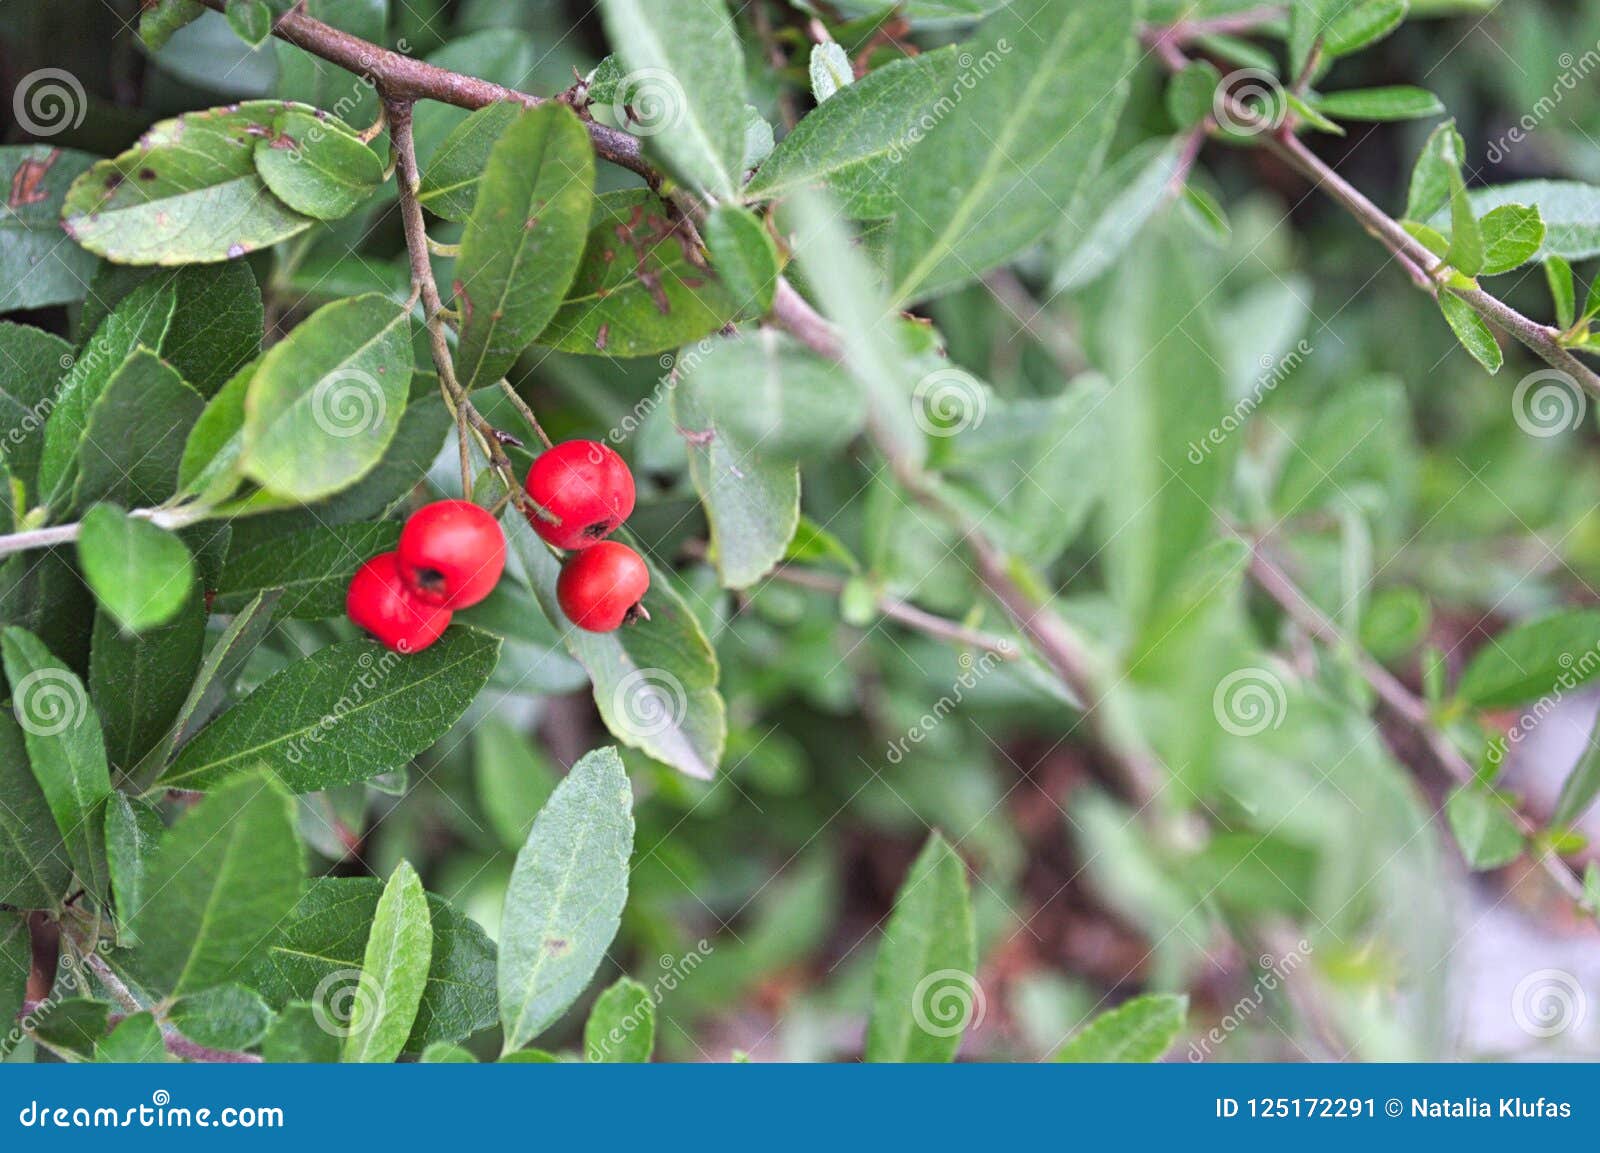 Bolas rojas en el jardín imagen de archivo. Imagen de frutas - 125172291